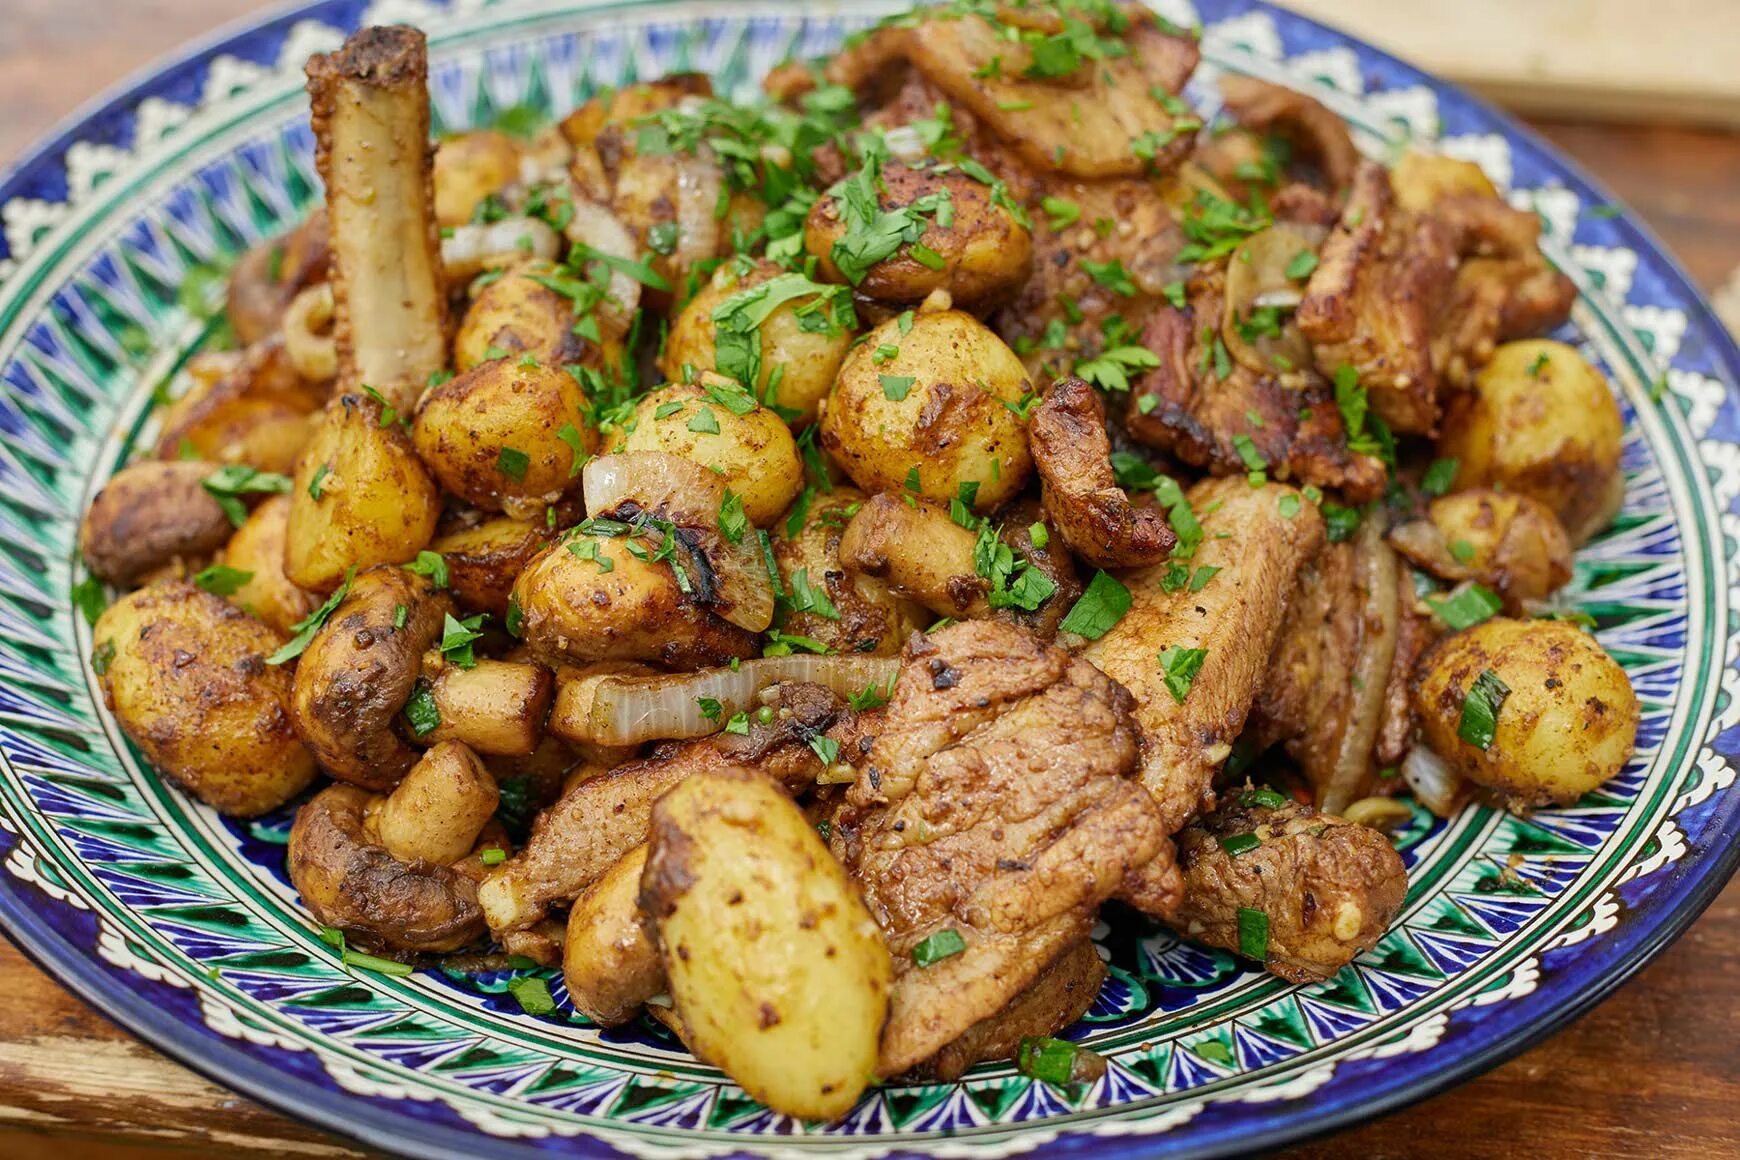 Приготовление картошки в казане. Картошка с мясом в казане. Жареная картошка с мясом в казане. Картошка с мясом в казане на костре. Картошка с мясом и грибами в казане.